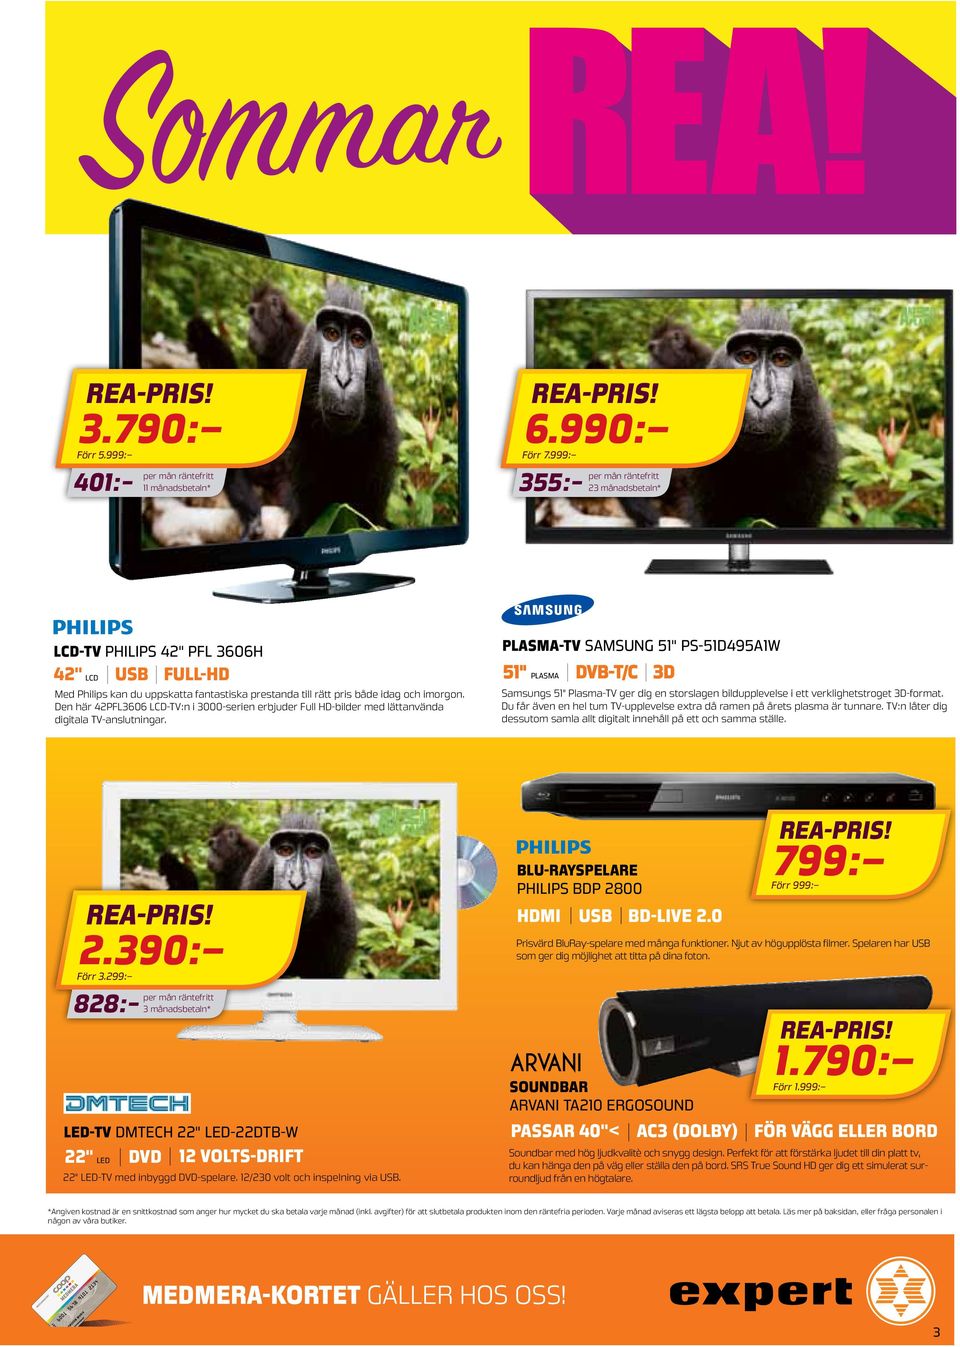 Den här 42PFL3606 LCD-TV:n i 3000-serien erbjuder Full HD-bilder med lättanvända digitala TV-anslutningar.